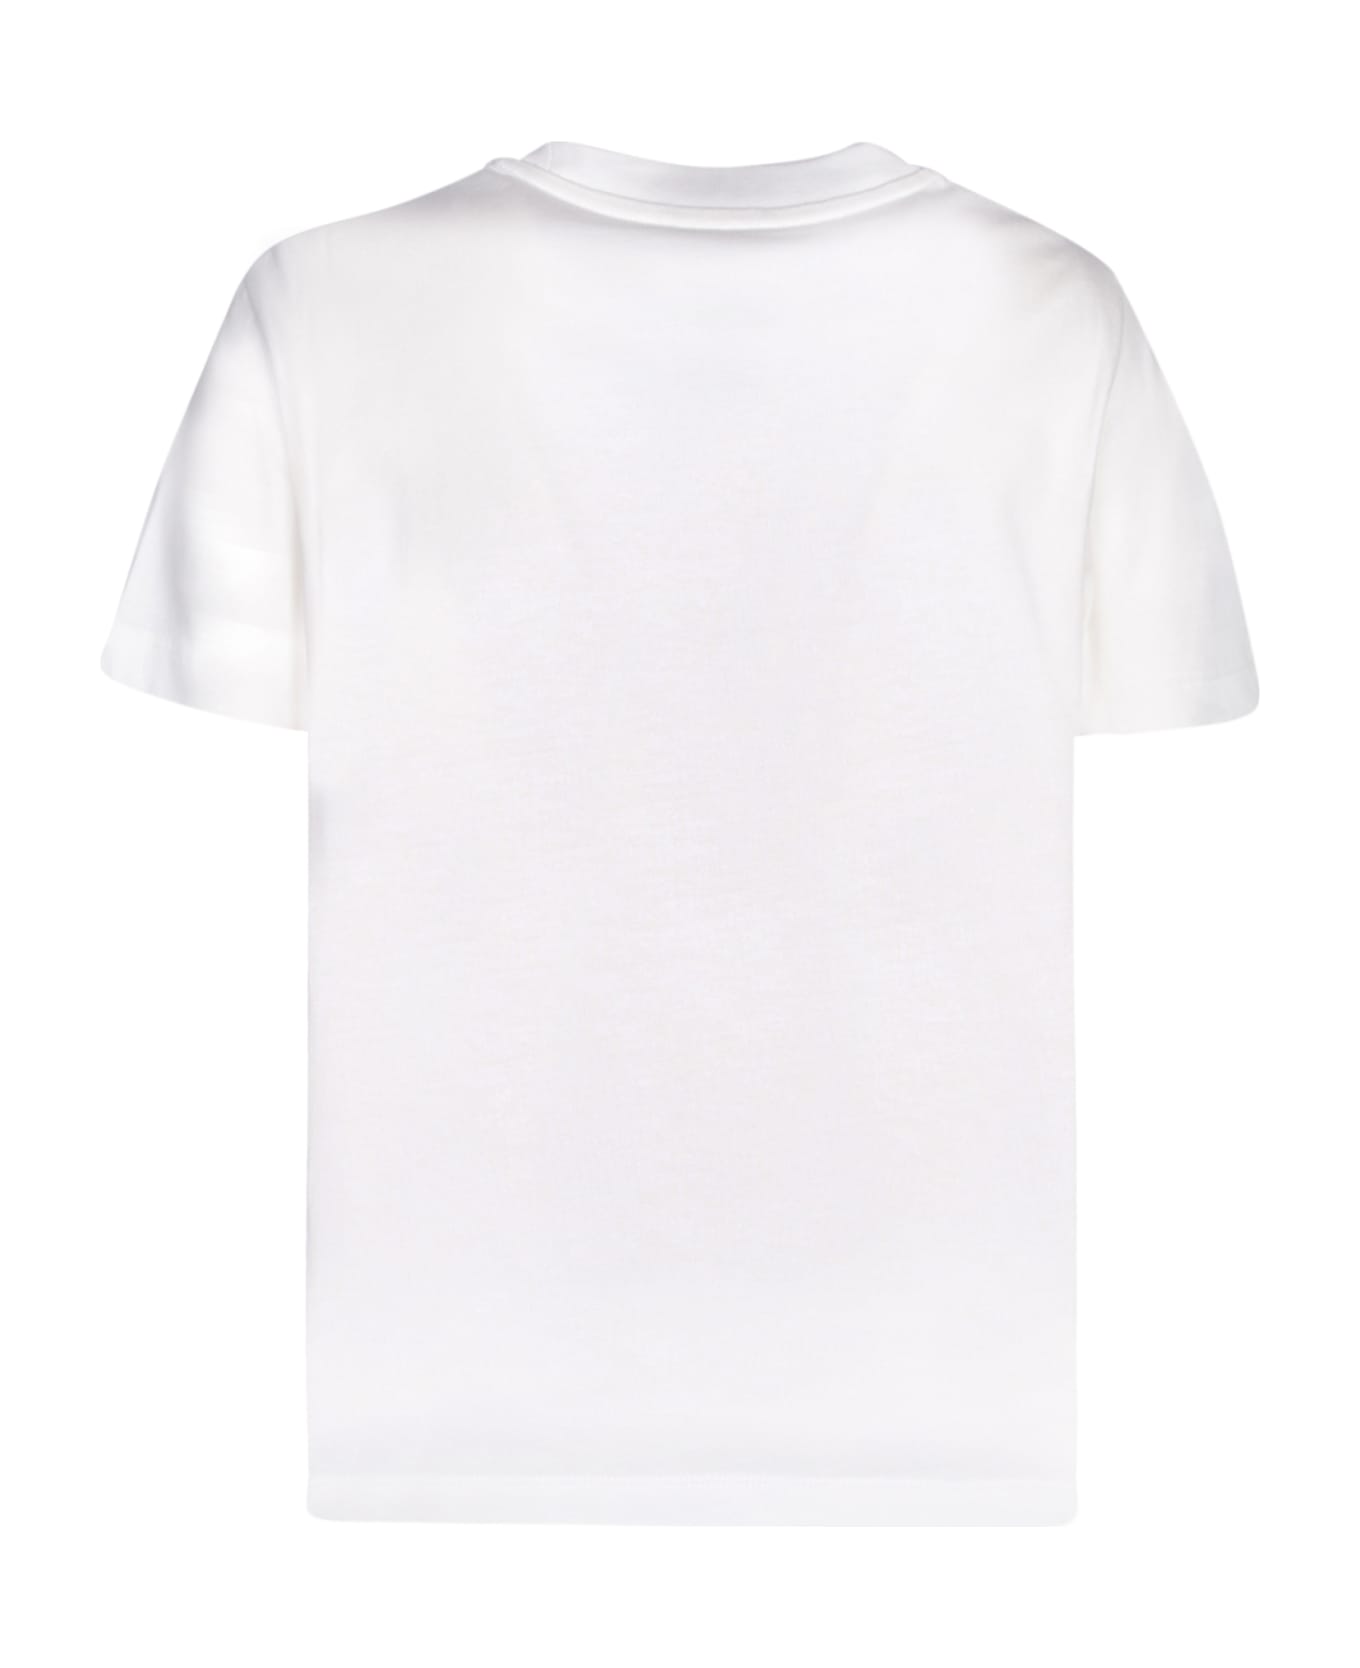 Moncler Cotton T-shirt - White